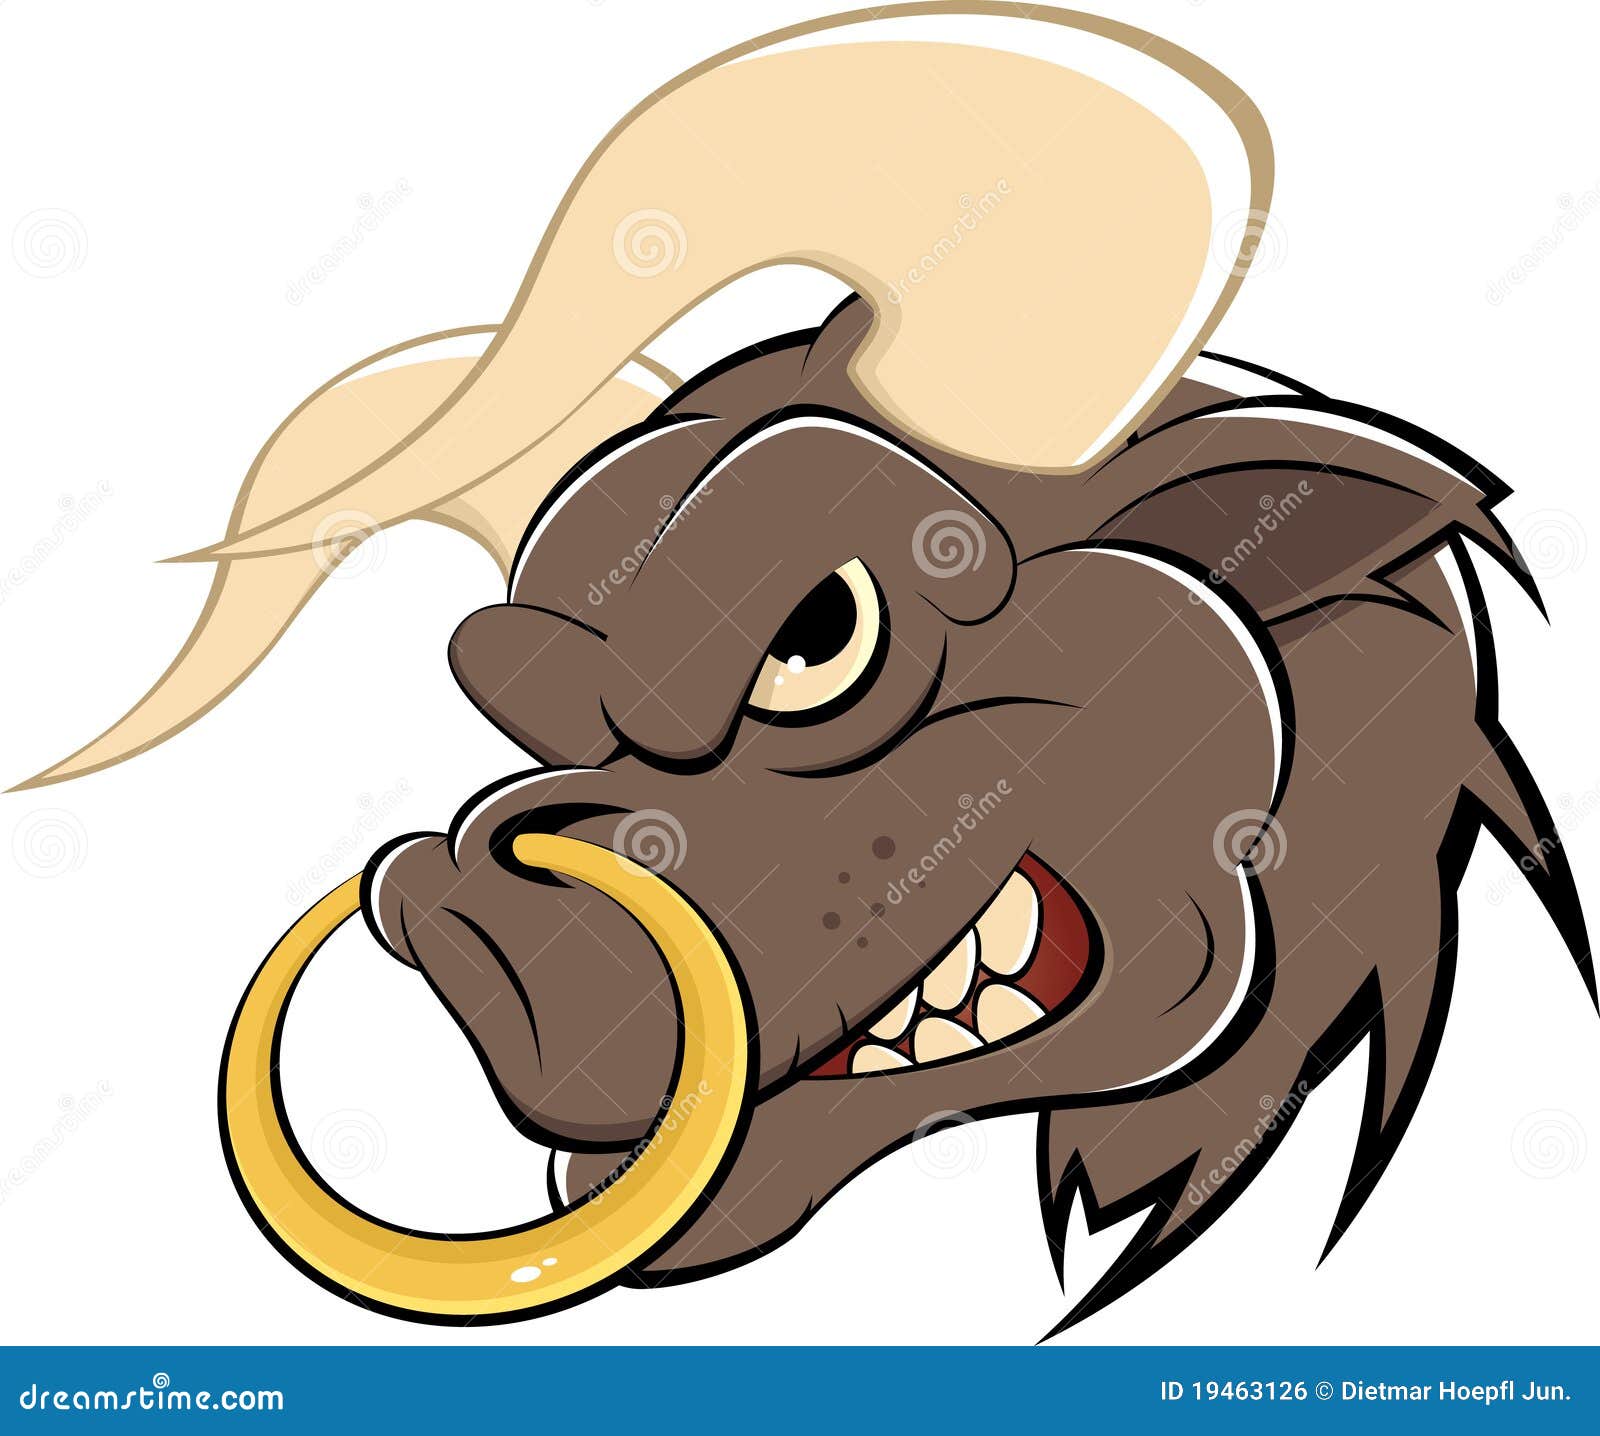 8mm-12mm Buffalo Pincher Awl Horseshoe Septum Ear Nose Ring Piercing Earing  Bar | eBay